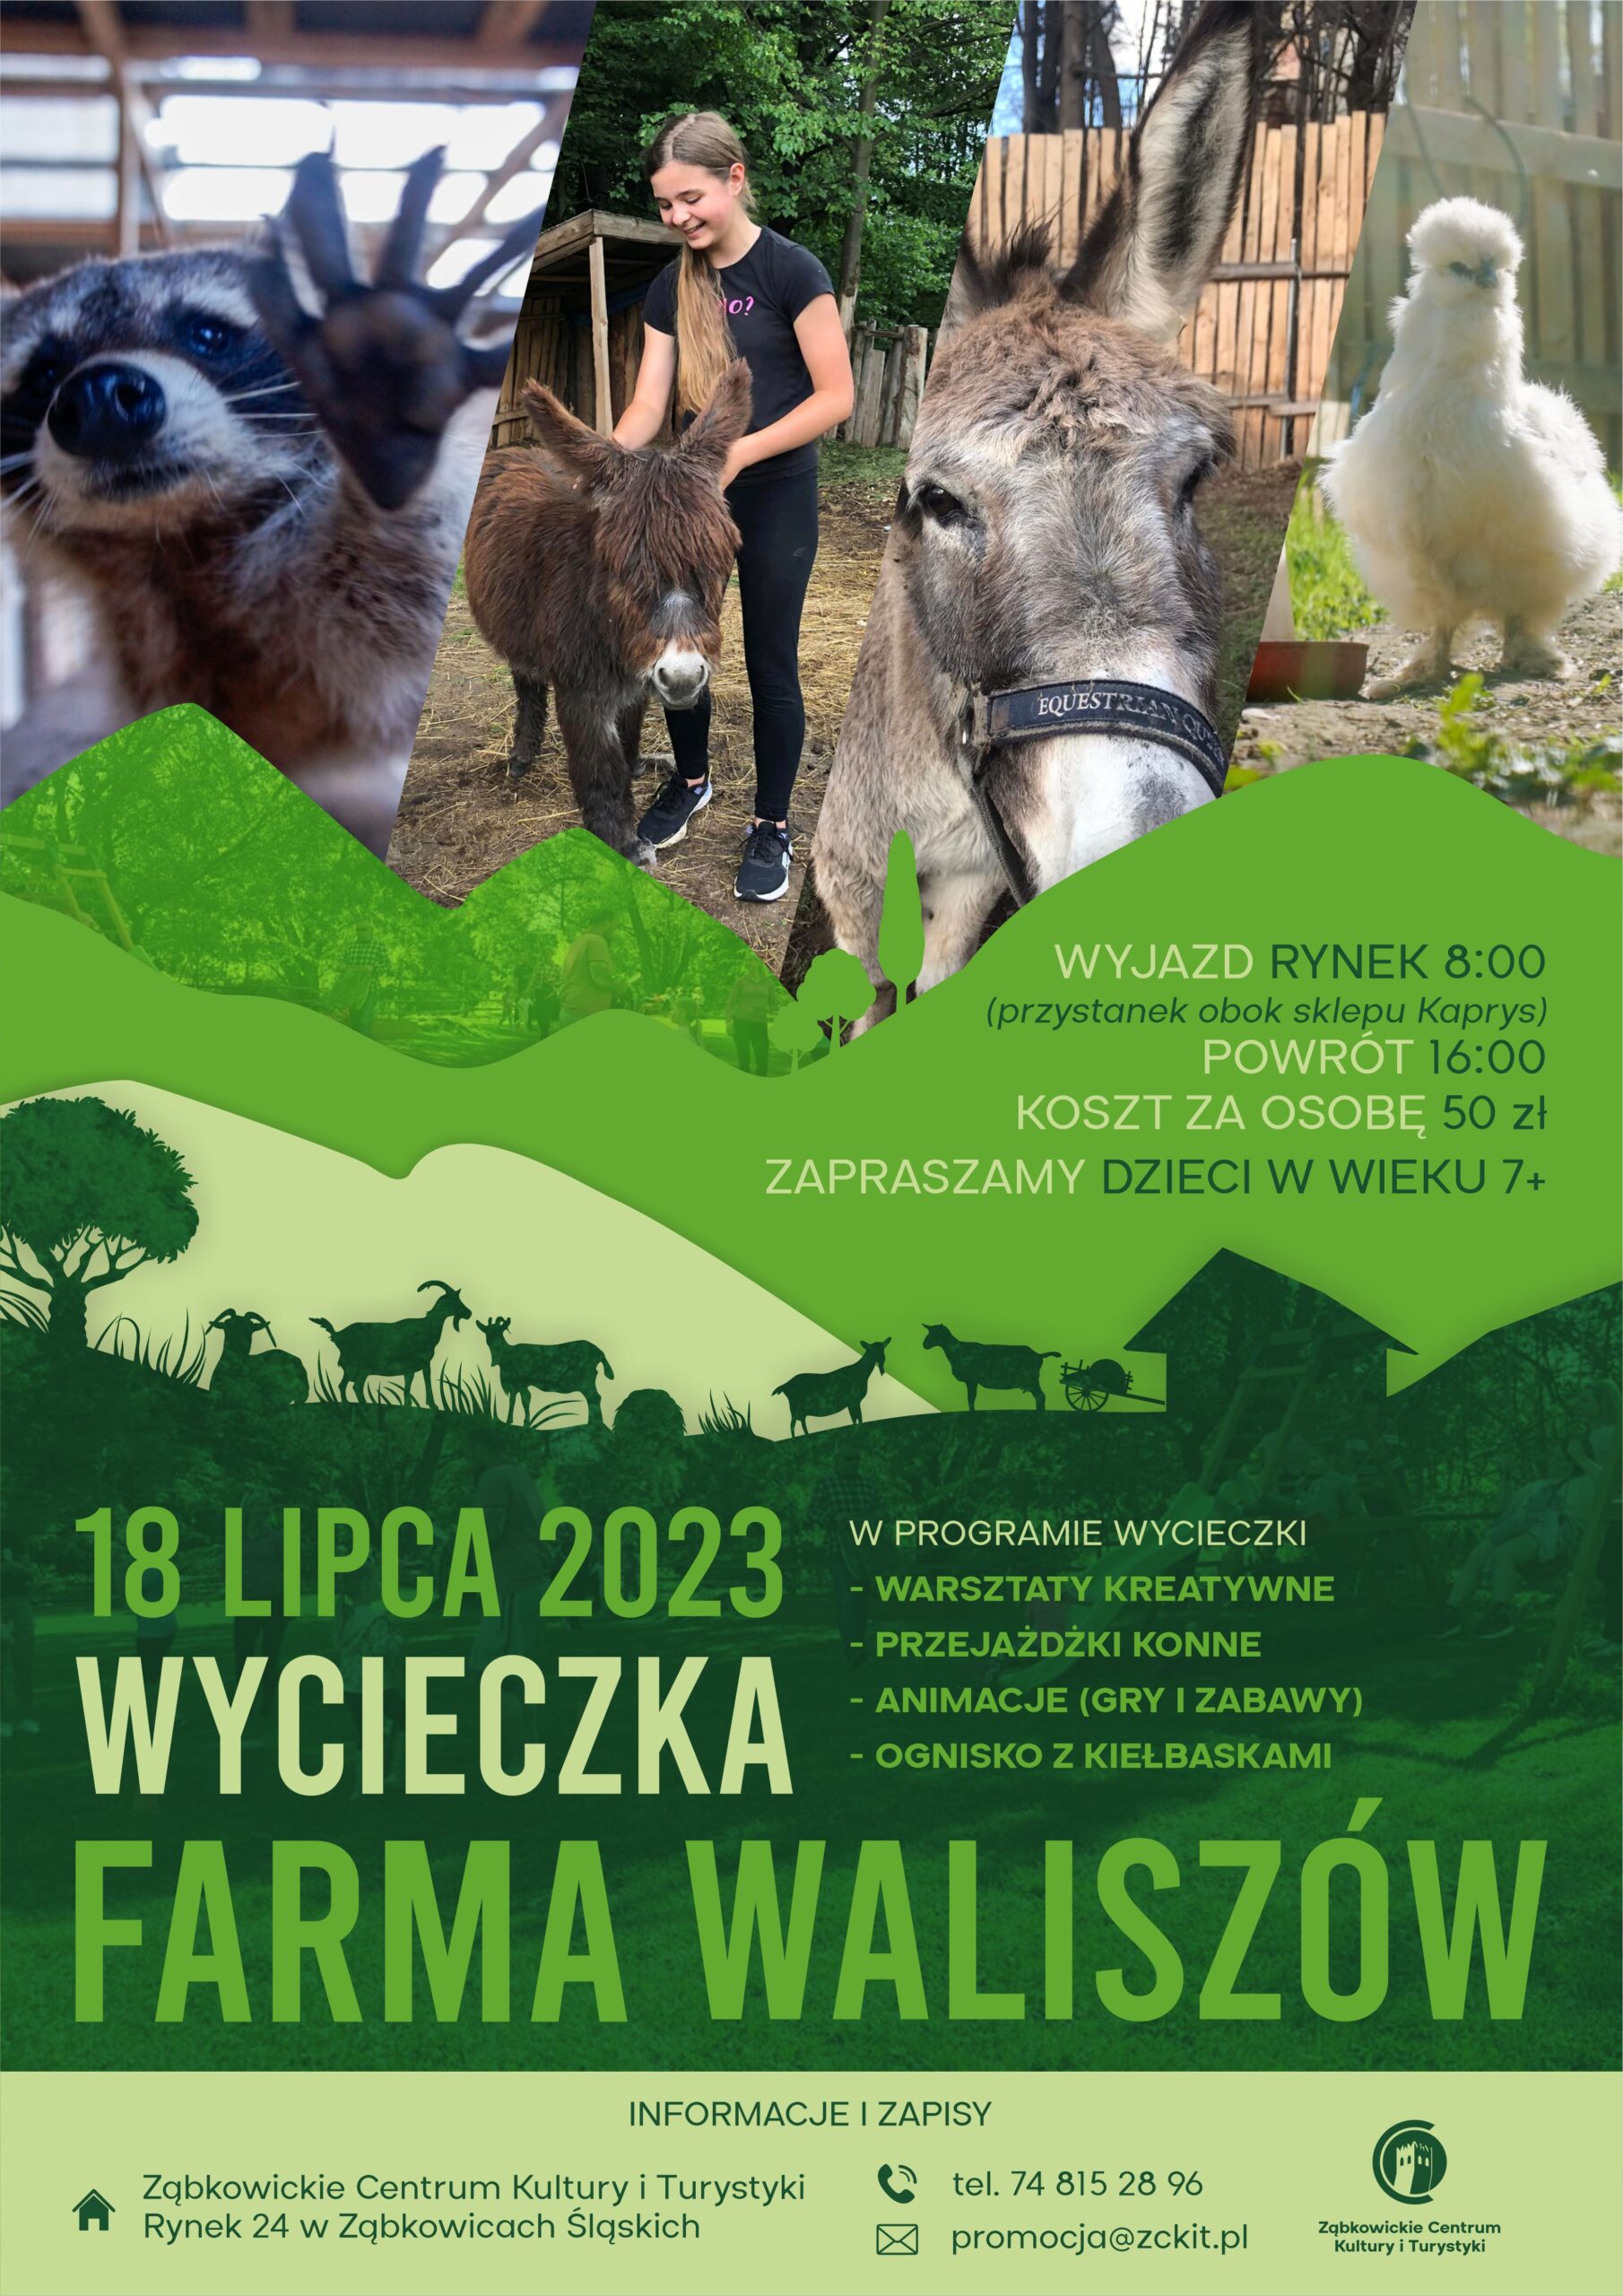 Plakat informujący o wycieczce na farmę waliszów, która odbyła się 18 lipca 2023r. dla dzieci 7+